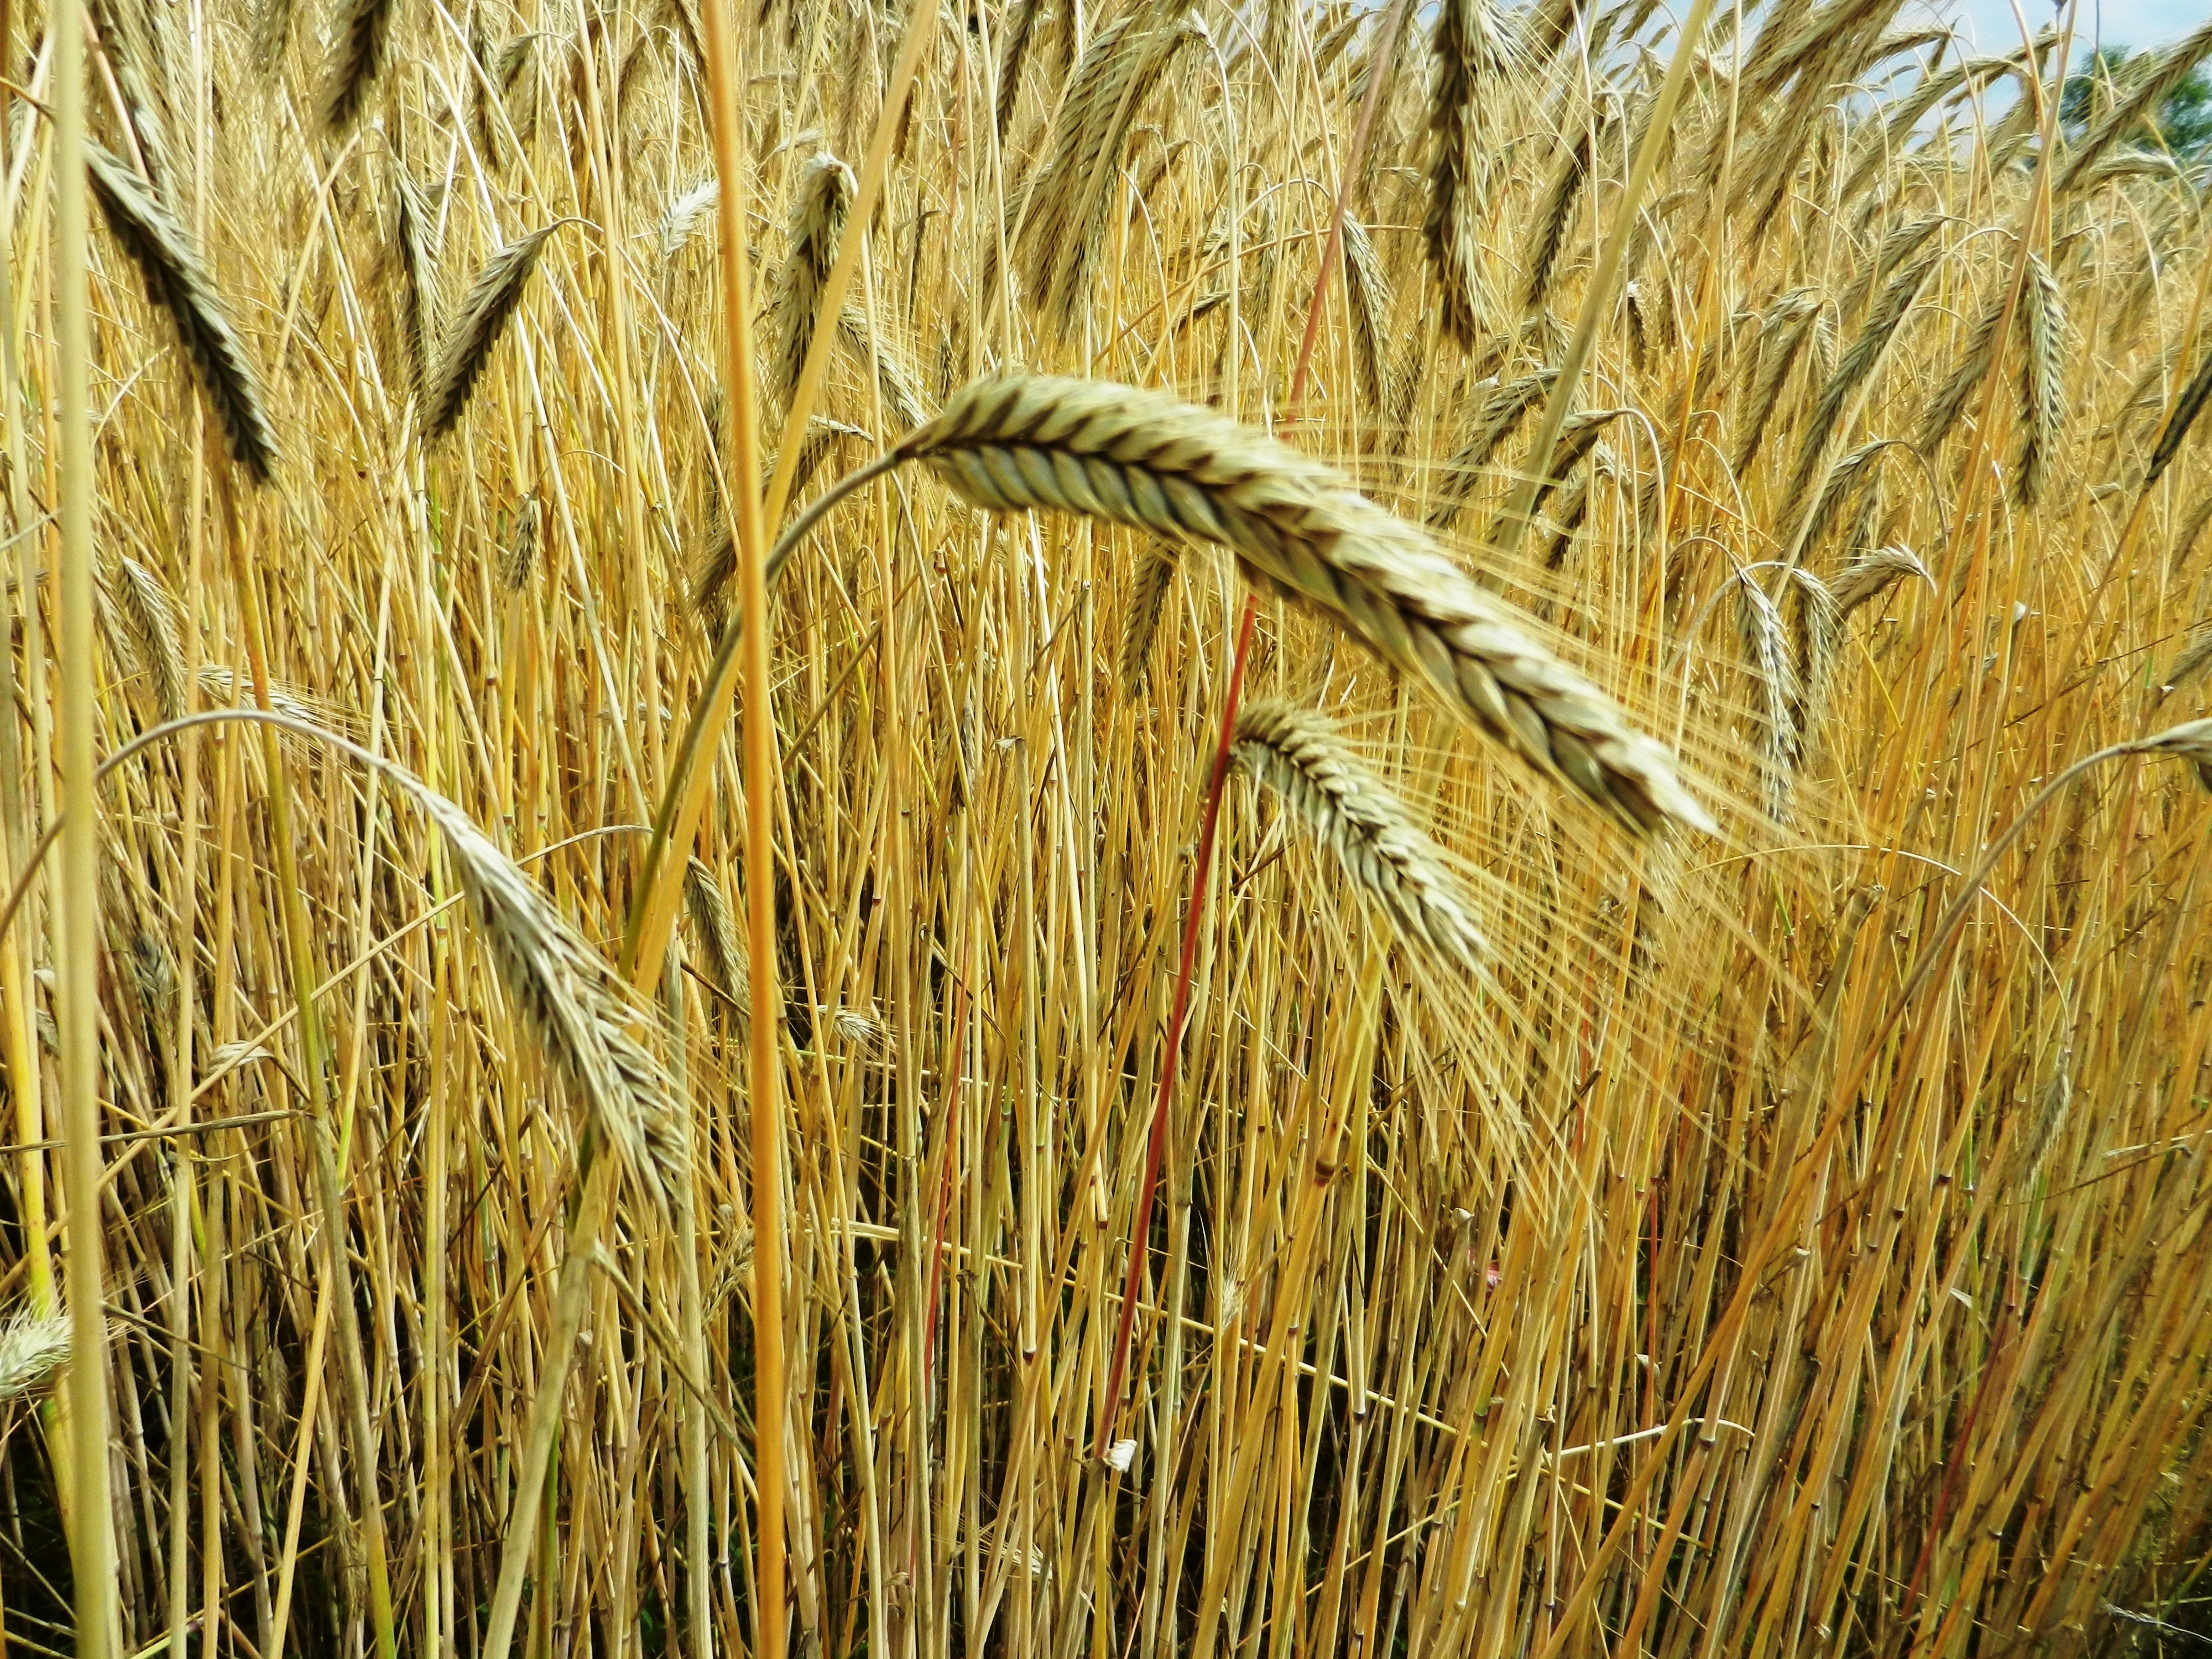 Злаковые растения рожь. Ячмень пшеница рожь культура зерновая. Злаковые растения ячмень. Растения поля: зерновые культуры( рожь, пшеница, ячмень, кукуруза). Колос пшеницы ячменя и ржи.